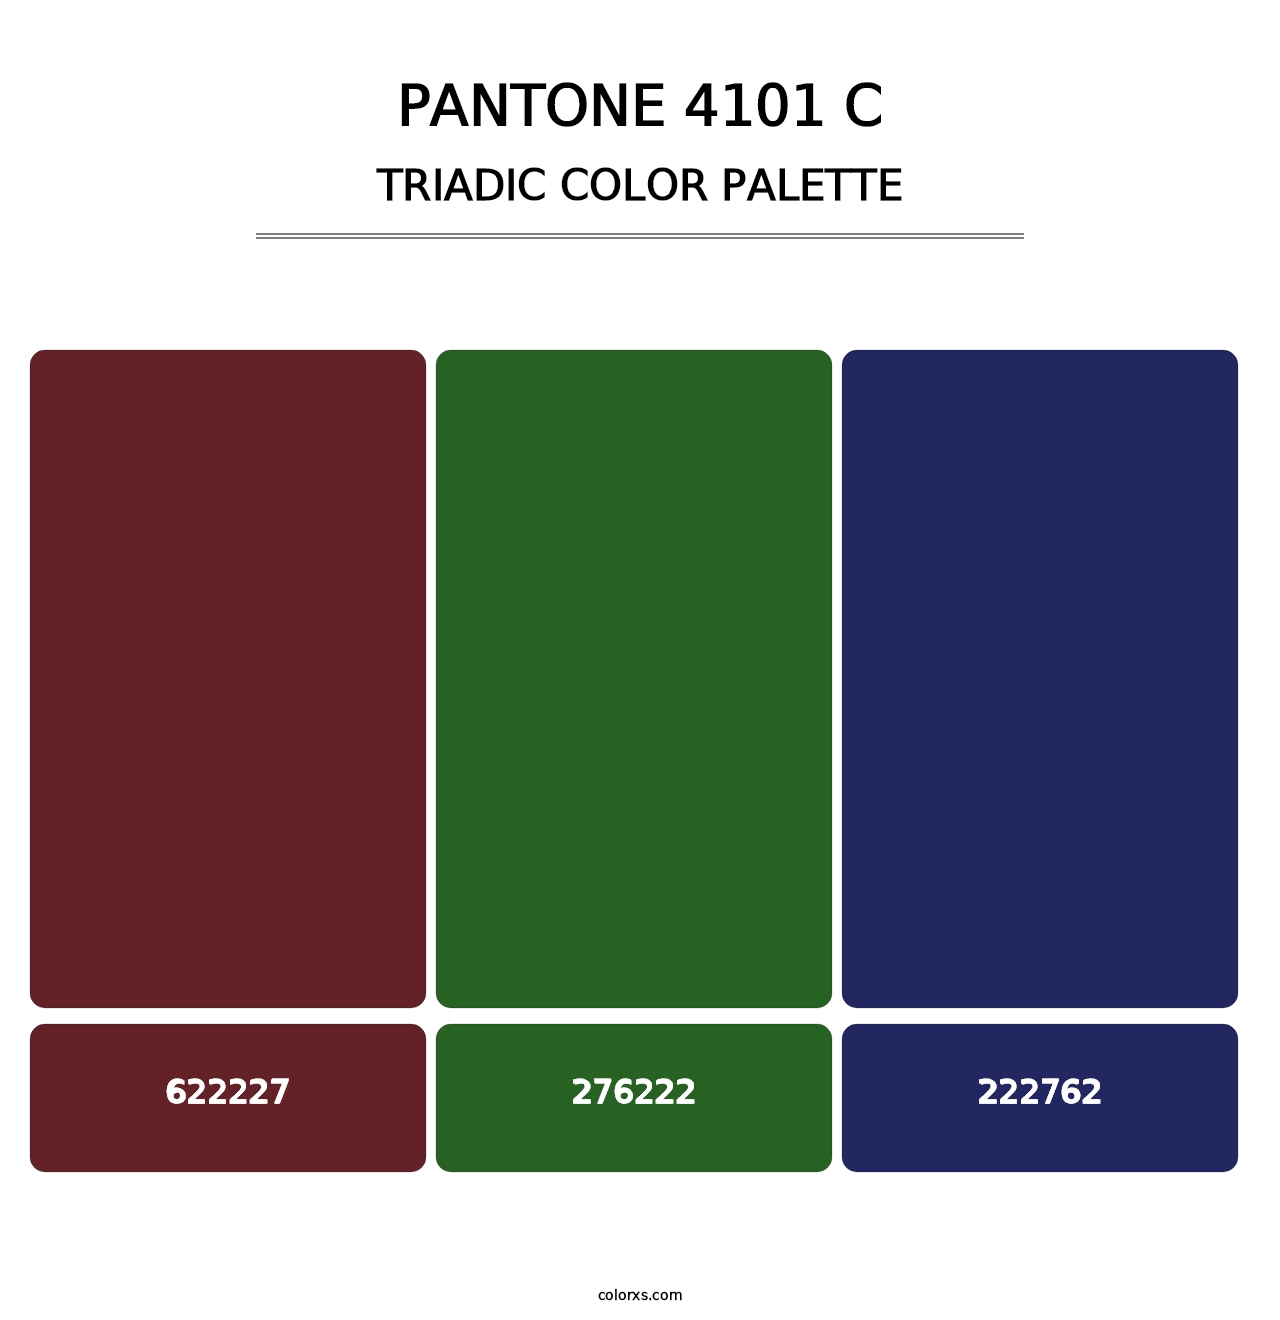 PANTONE 4101 C - Triadic Color Palette